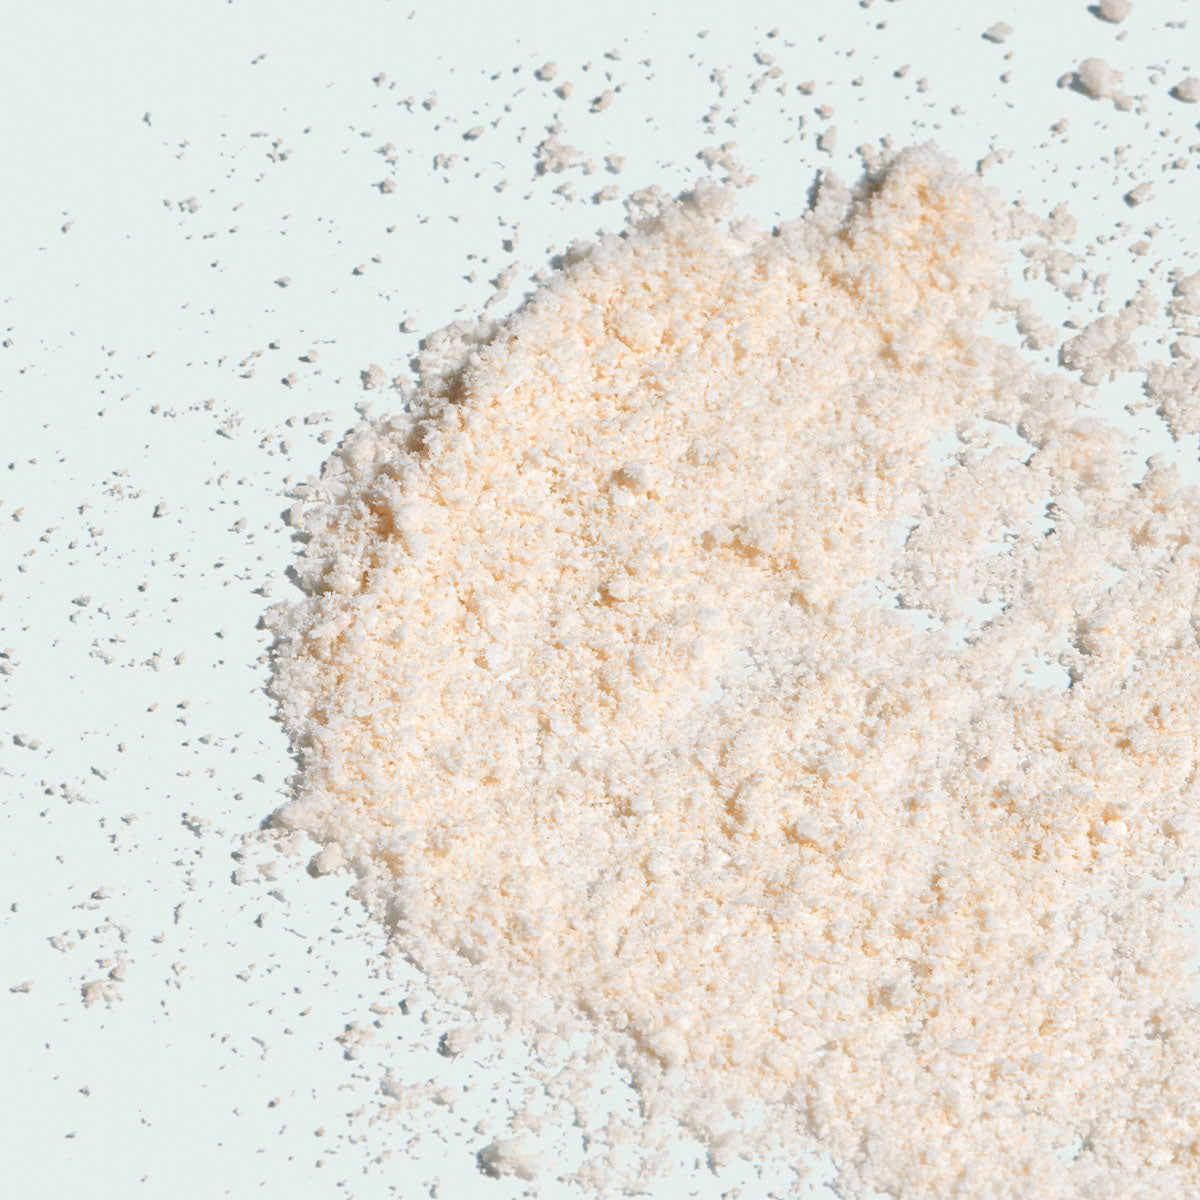 ILUMA Intense Brightening Exfoliating Powder (1.5 oz)